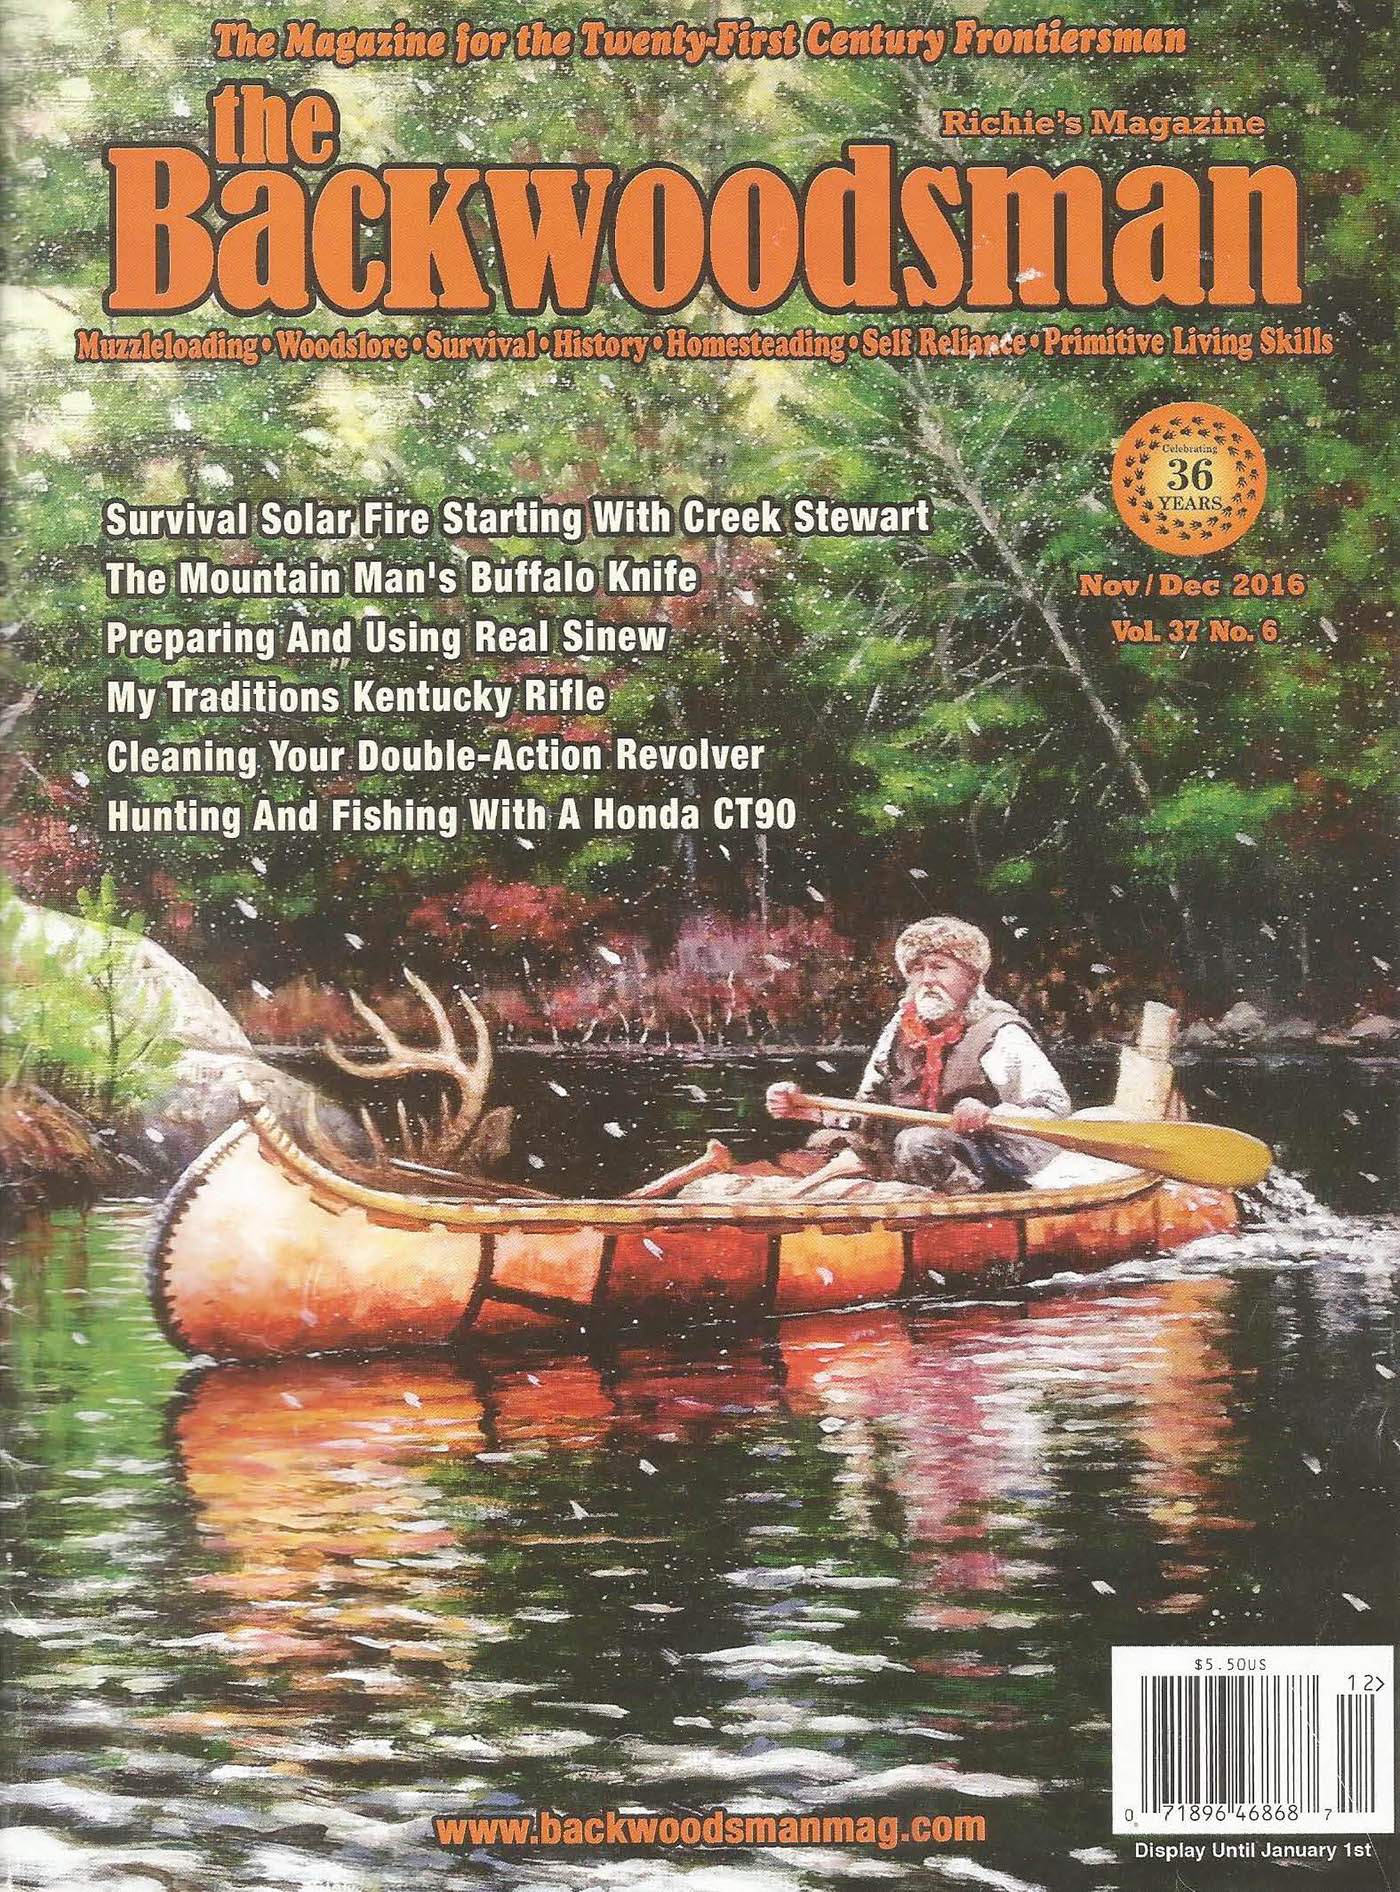 The Backwoodsman Magazine Redesign on Behance